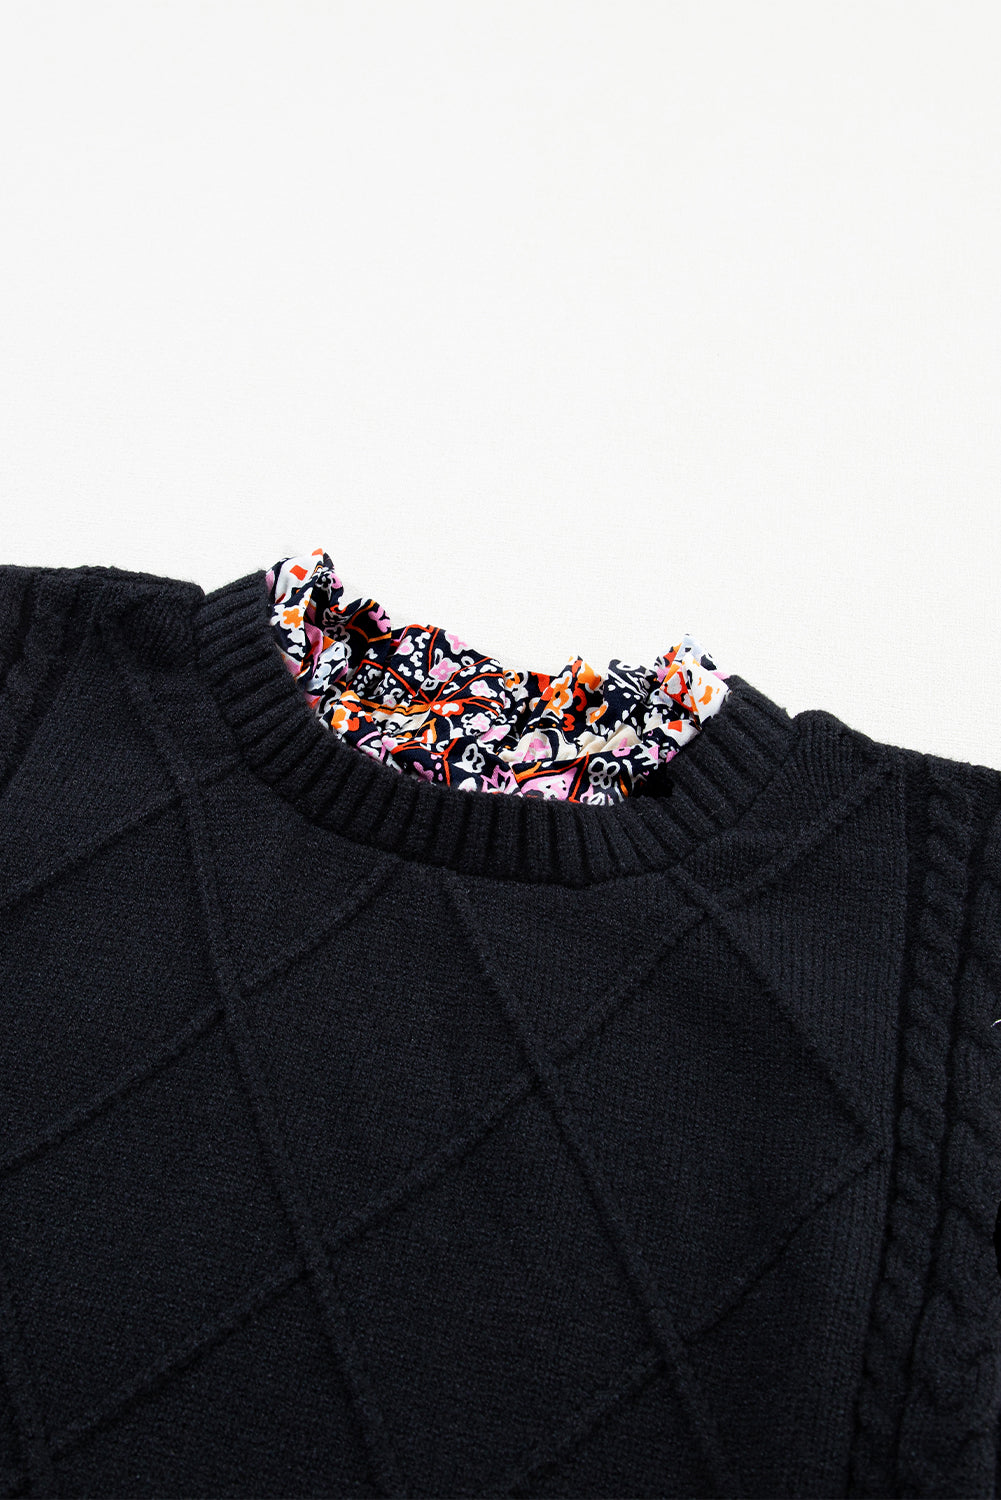 Črn pulover s cvetličnimi rokavi in ​​peplum v kontrastu